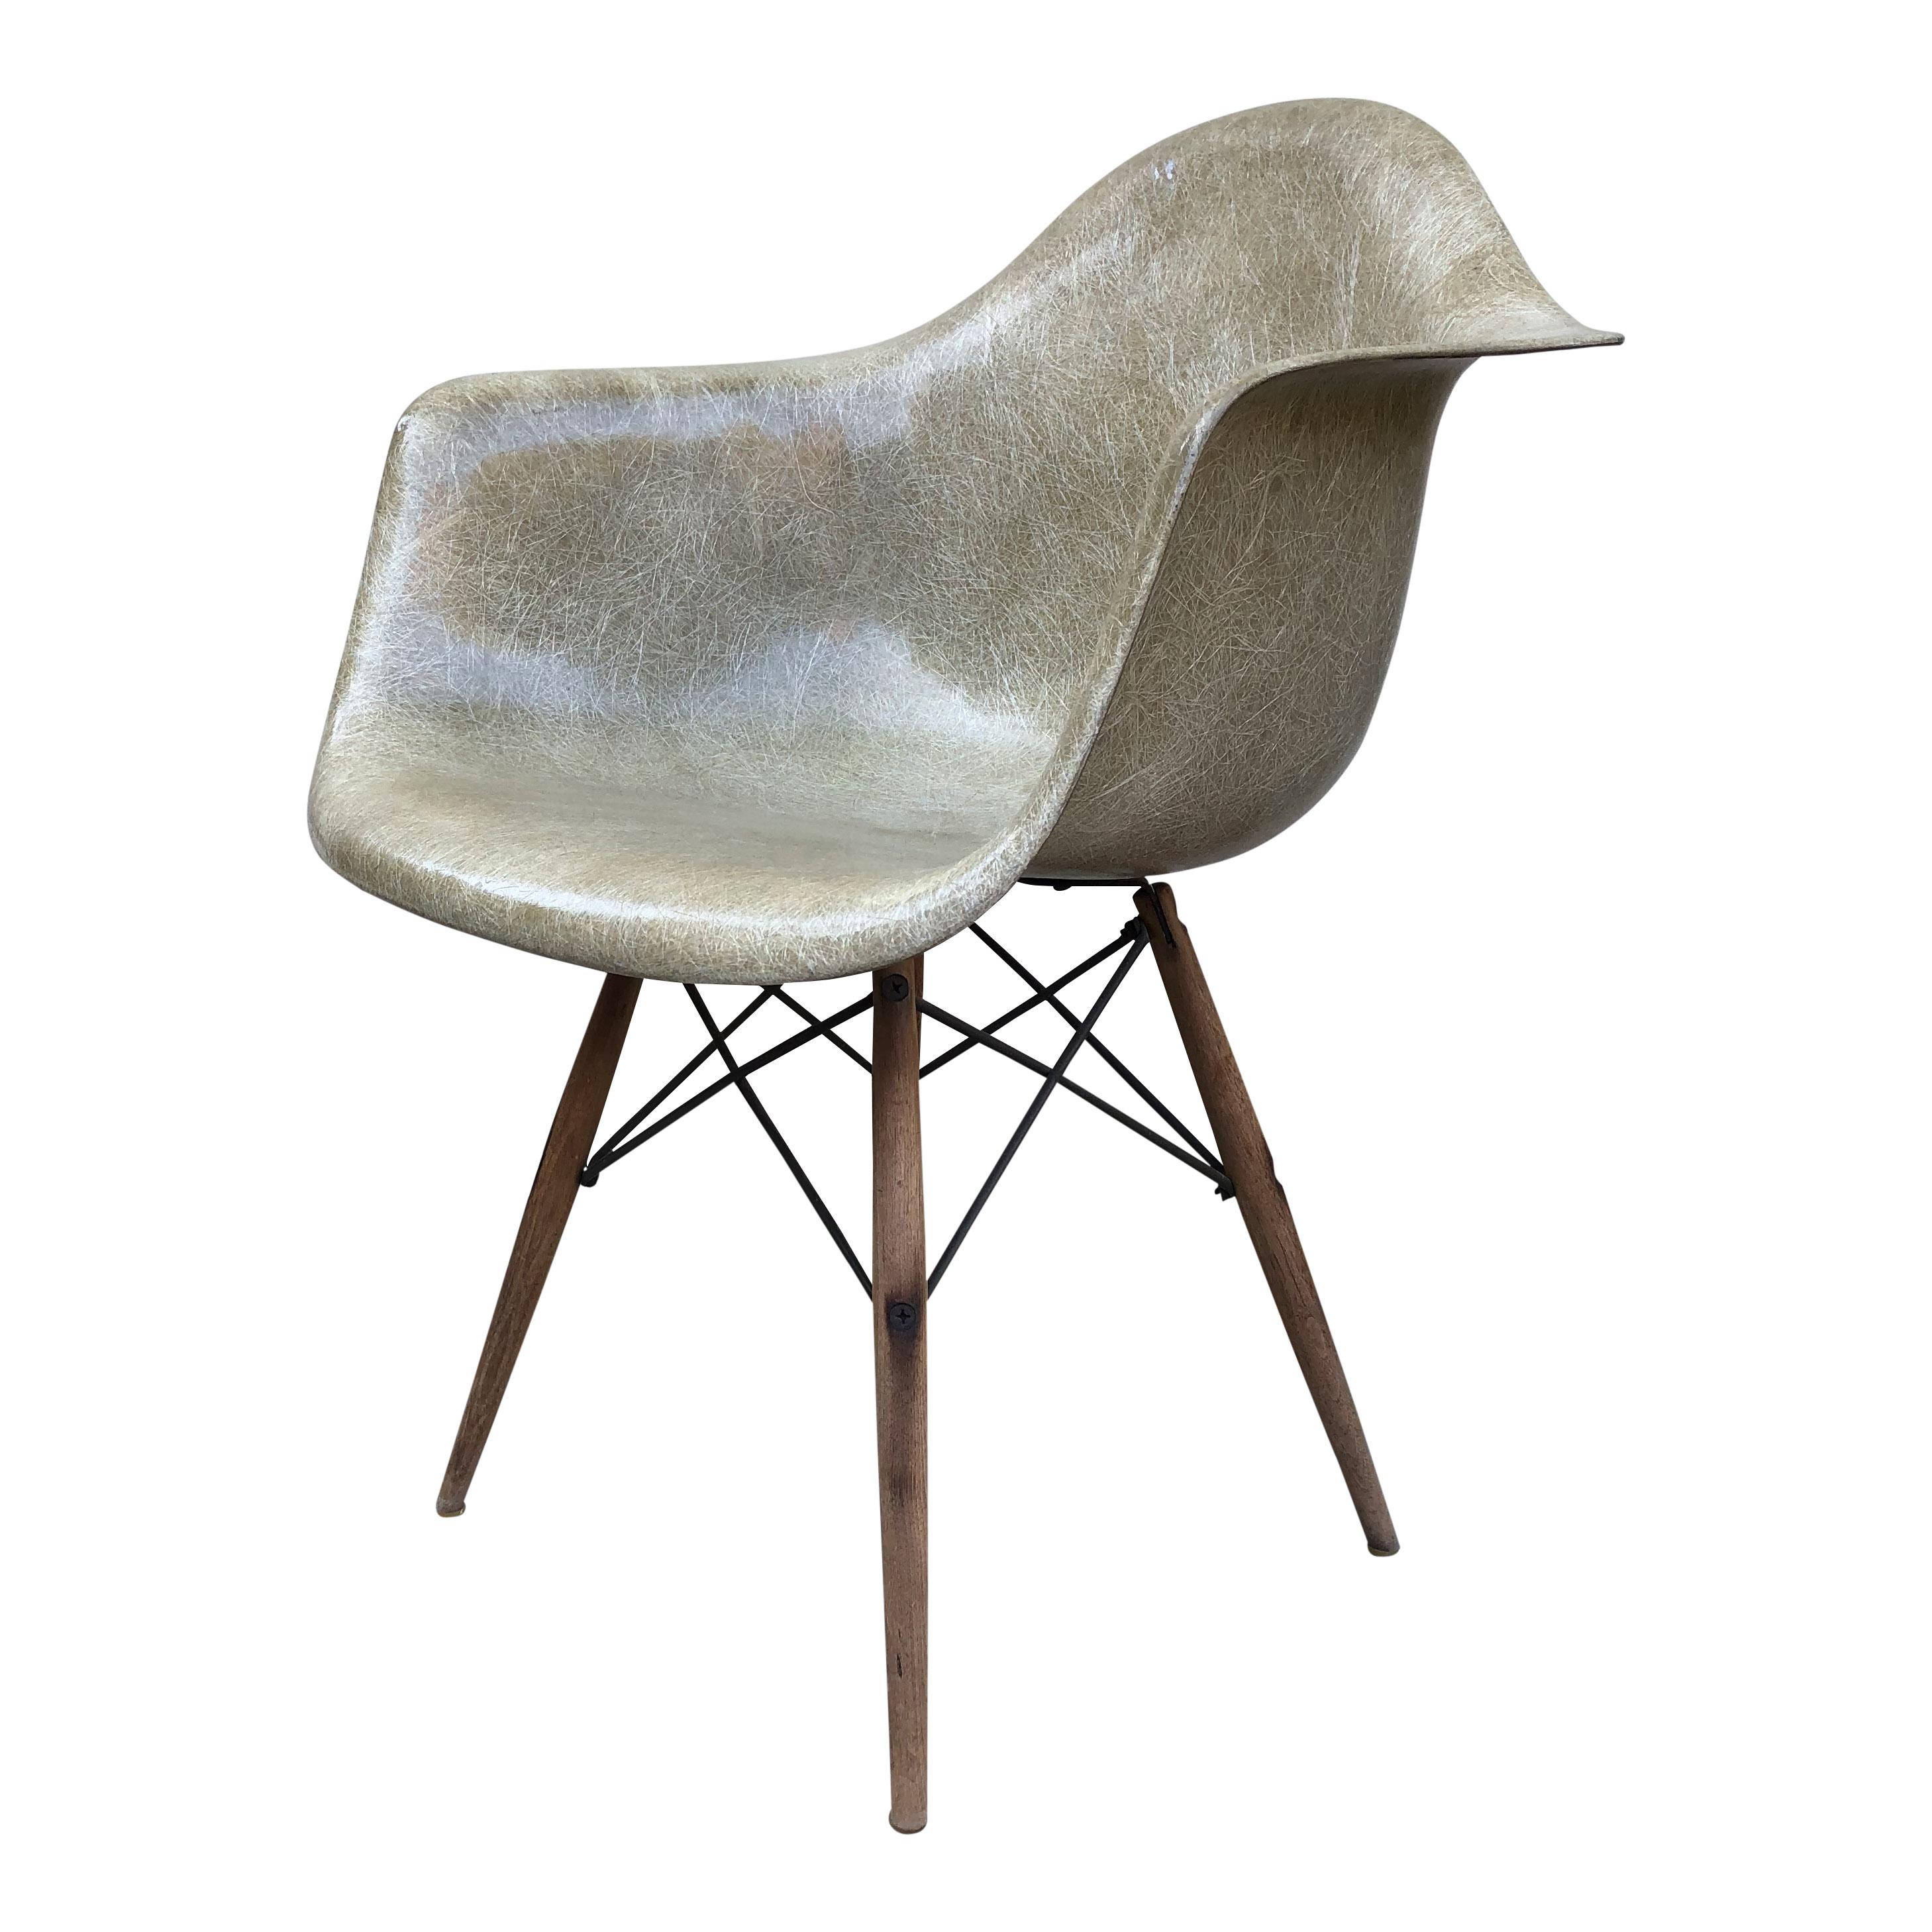 Wir bieten Ihnen eine Ikone des Mid-Century Modern Design - einen originalen Zenith Kunststoff-Esszimmerstuhl mit Eames-Dübelfuß in Seal Brown.

Dies ist ein seltenes und schönes Beispiel für einen Stuhl der 1. Generation mit einer